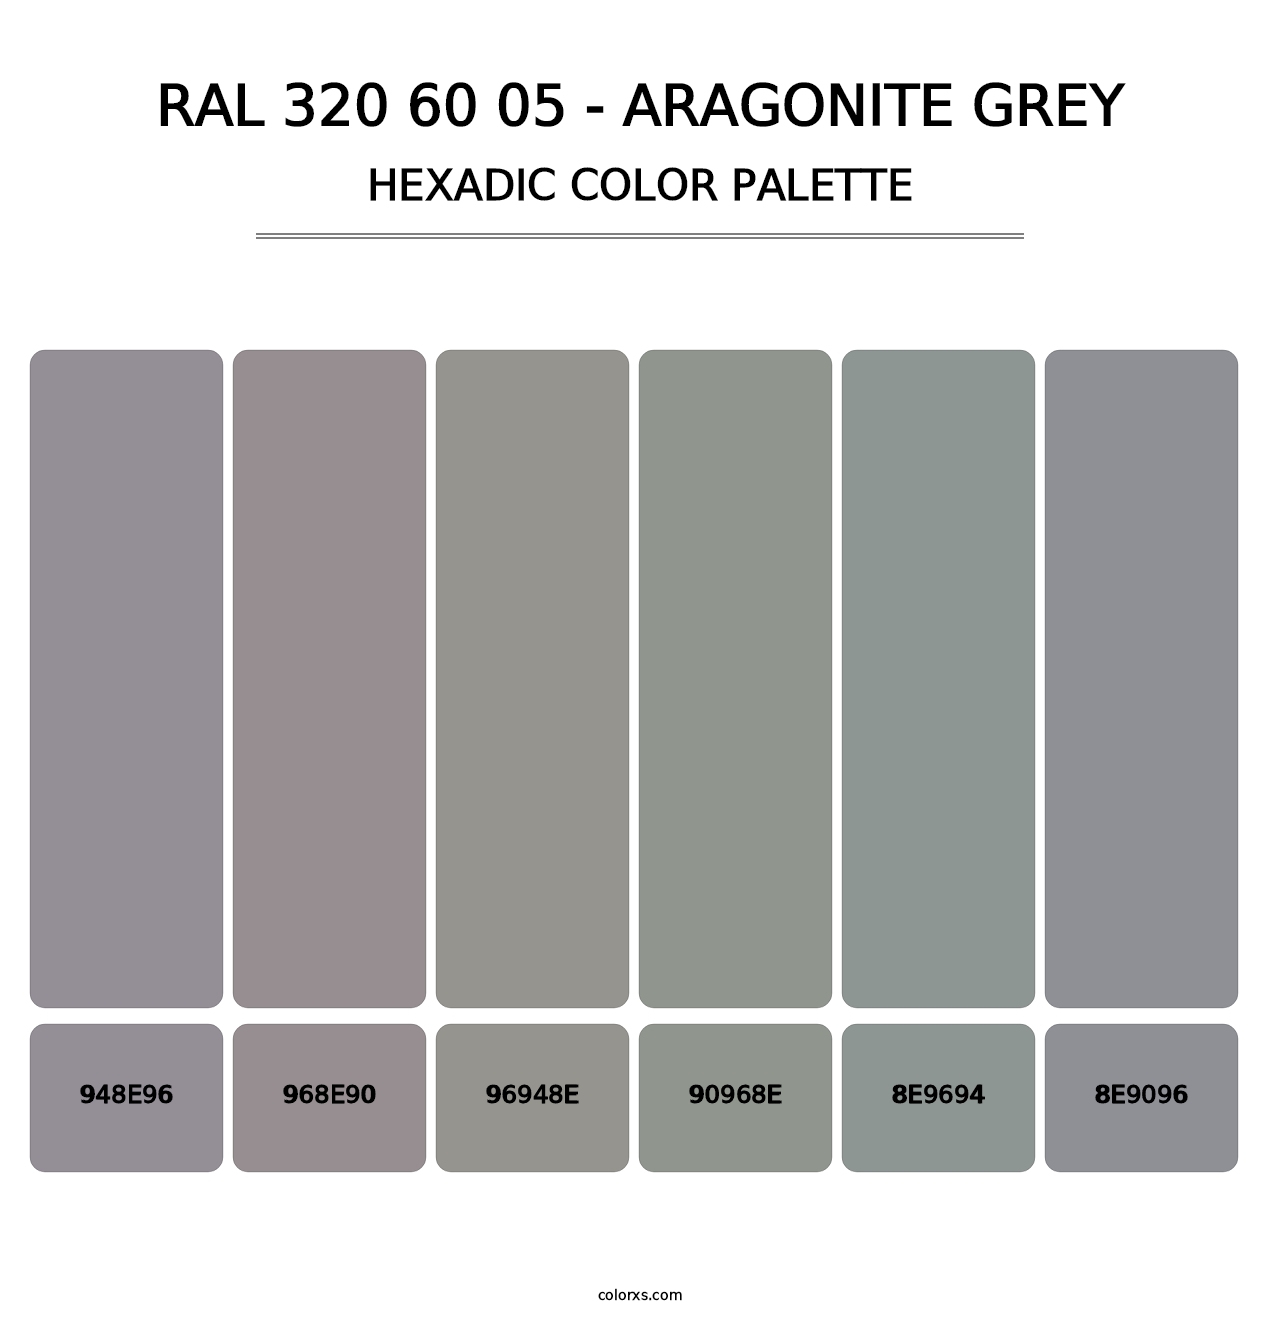 RAL 320 60 05 - Aragonite Grey - Hexadic Color Palette